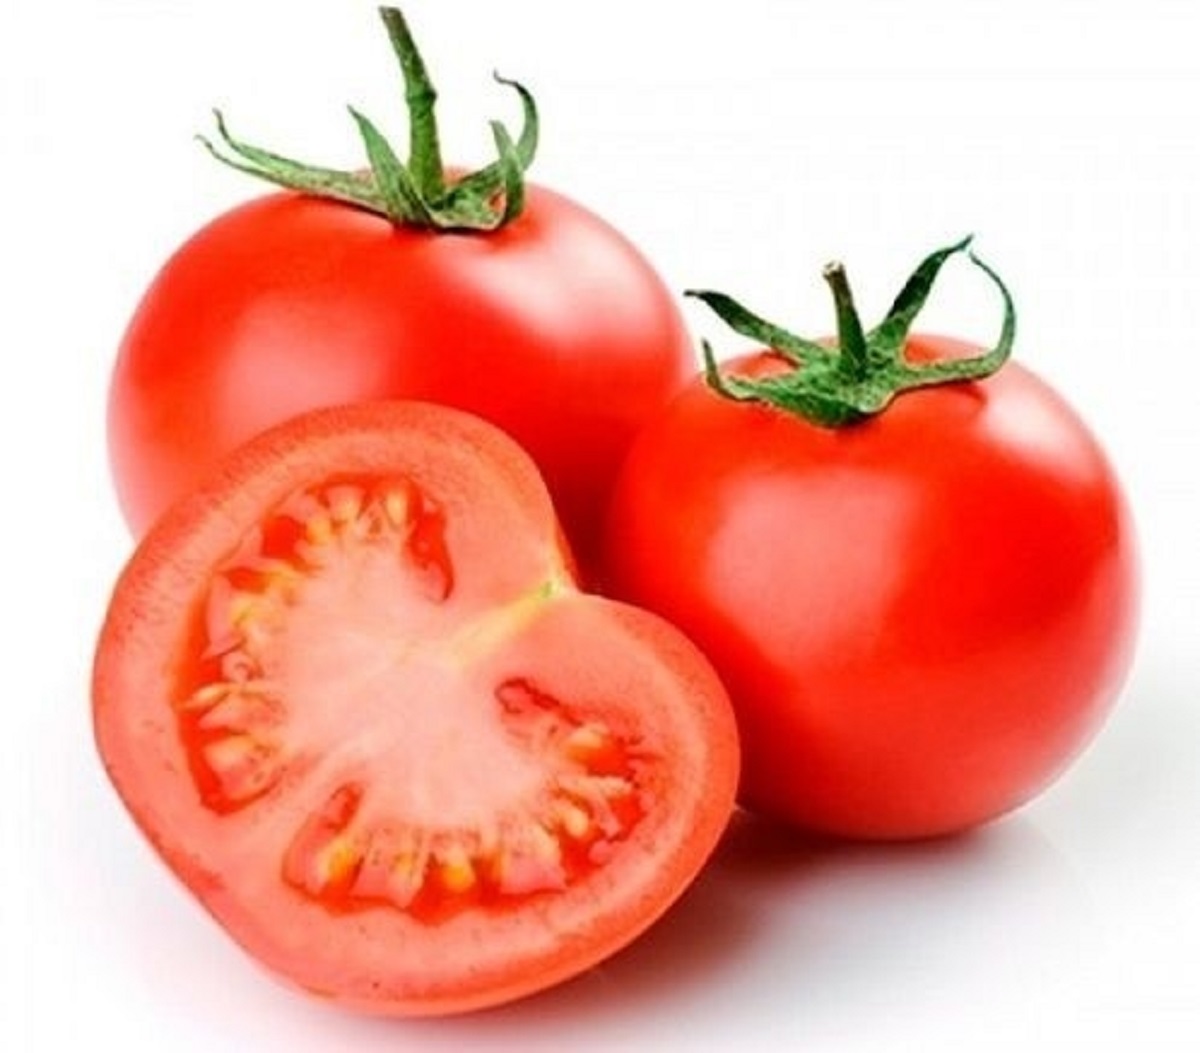 Bahan Alami Tomat untuk Kecantikan, Bisa Bikin Wajah Glowing dan Kulit Kencang  